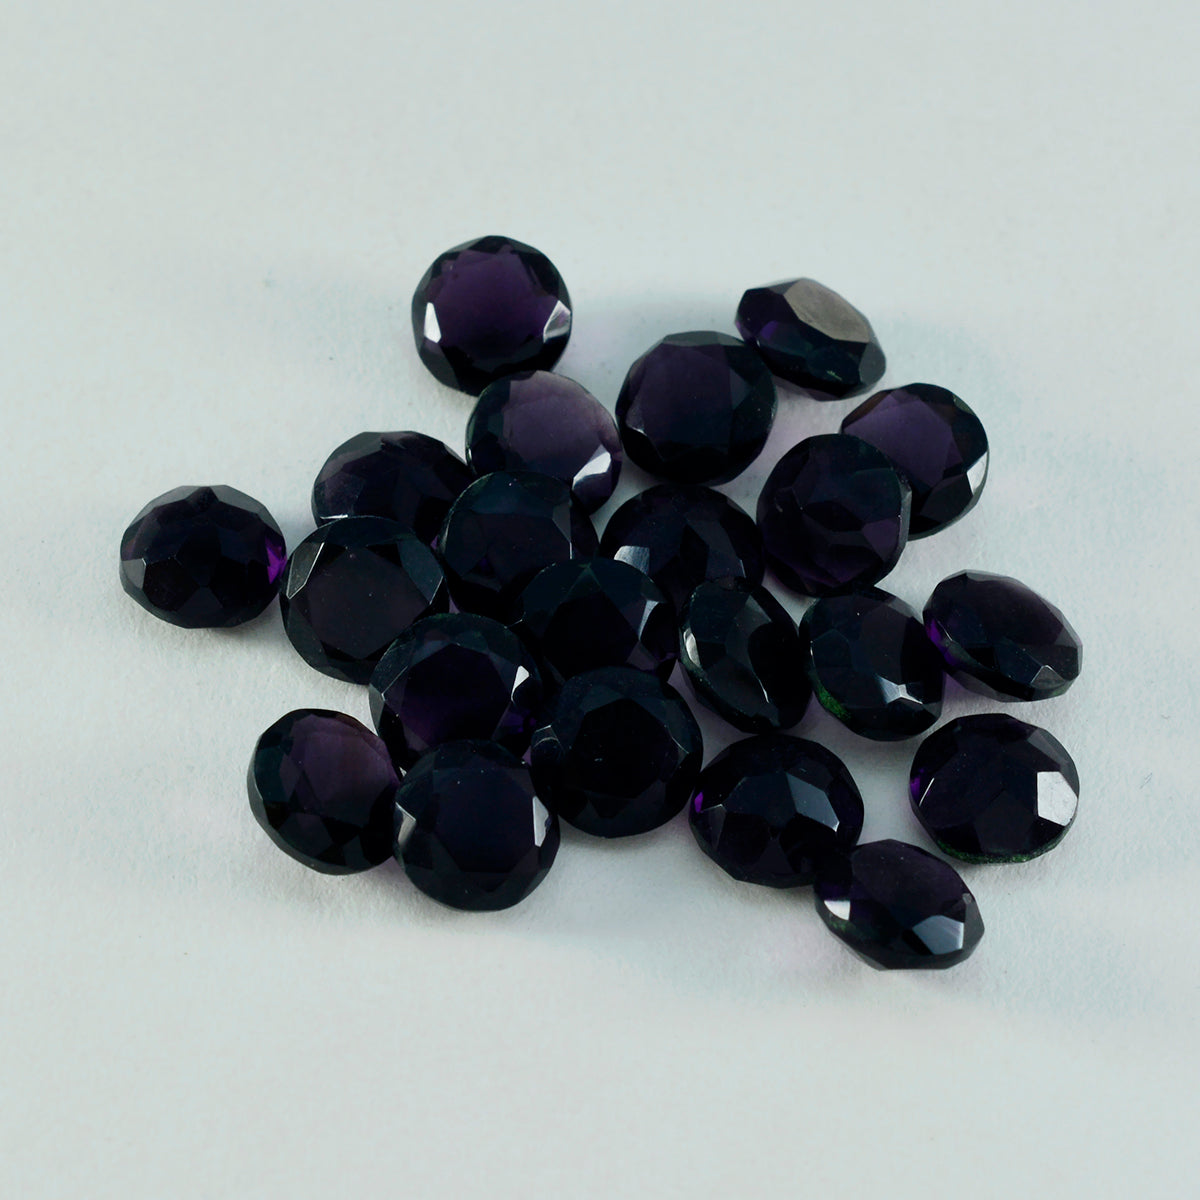 riyogems 1 шт. фиолетовый аметист cz ограненный 8x8 мм круглая форма красивый качественный свободный камень